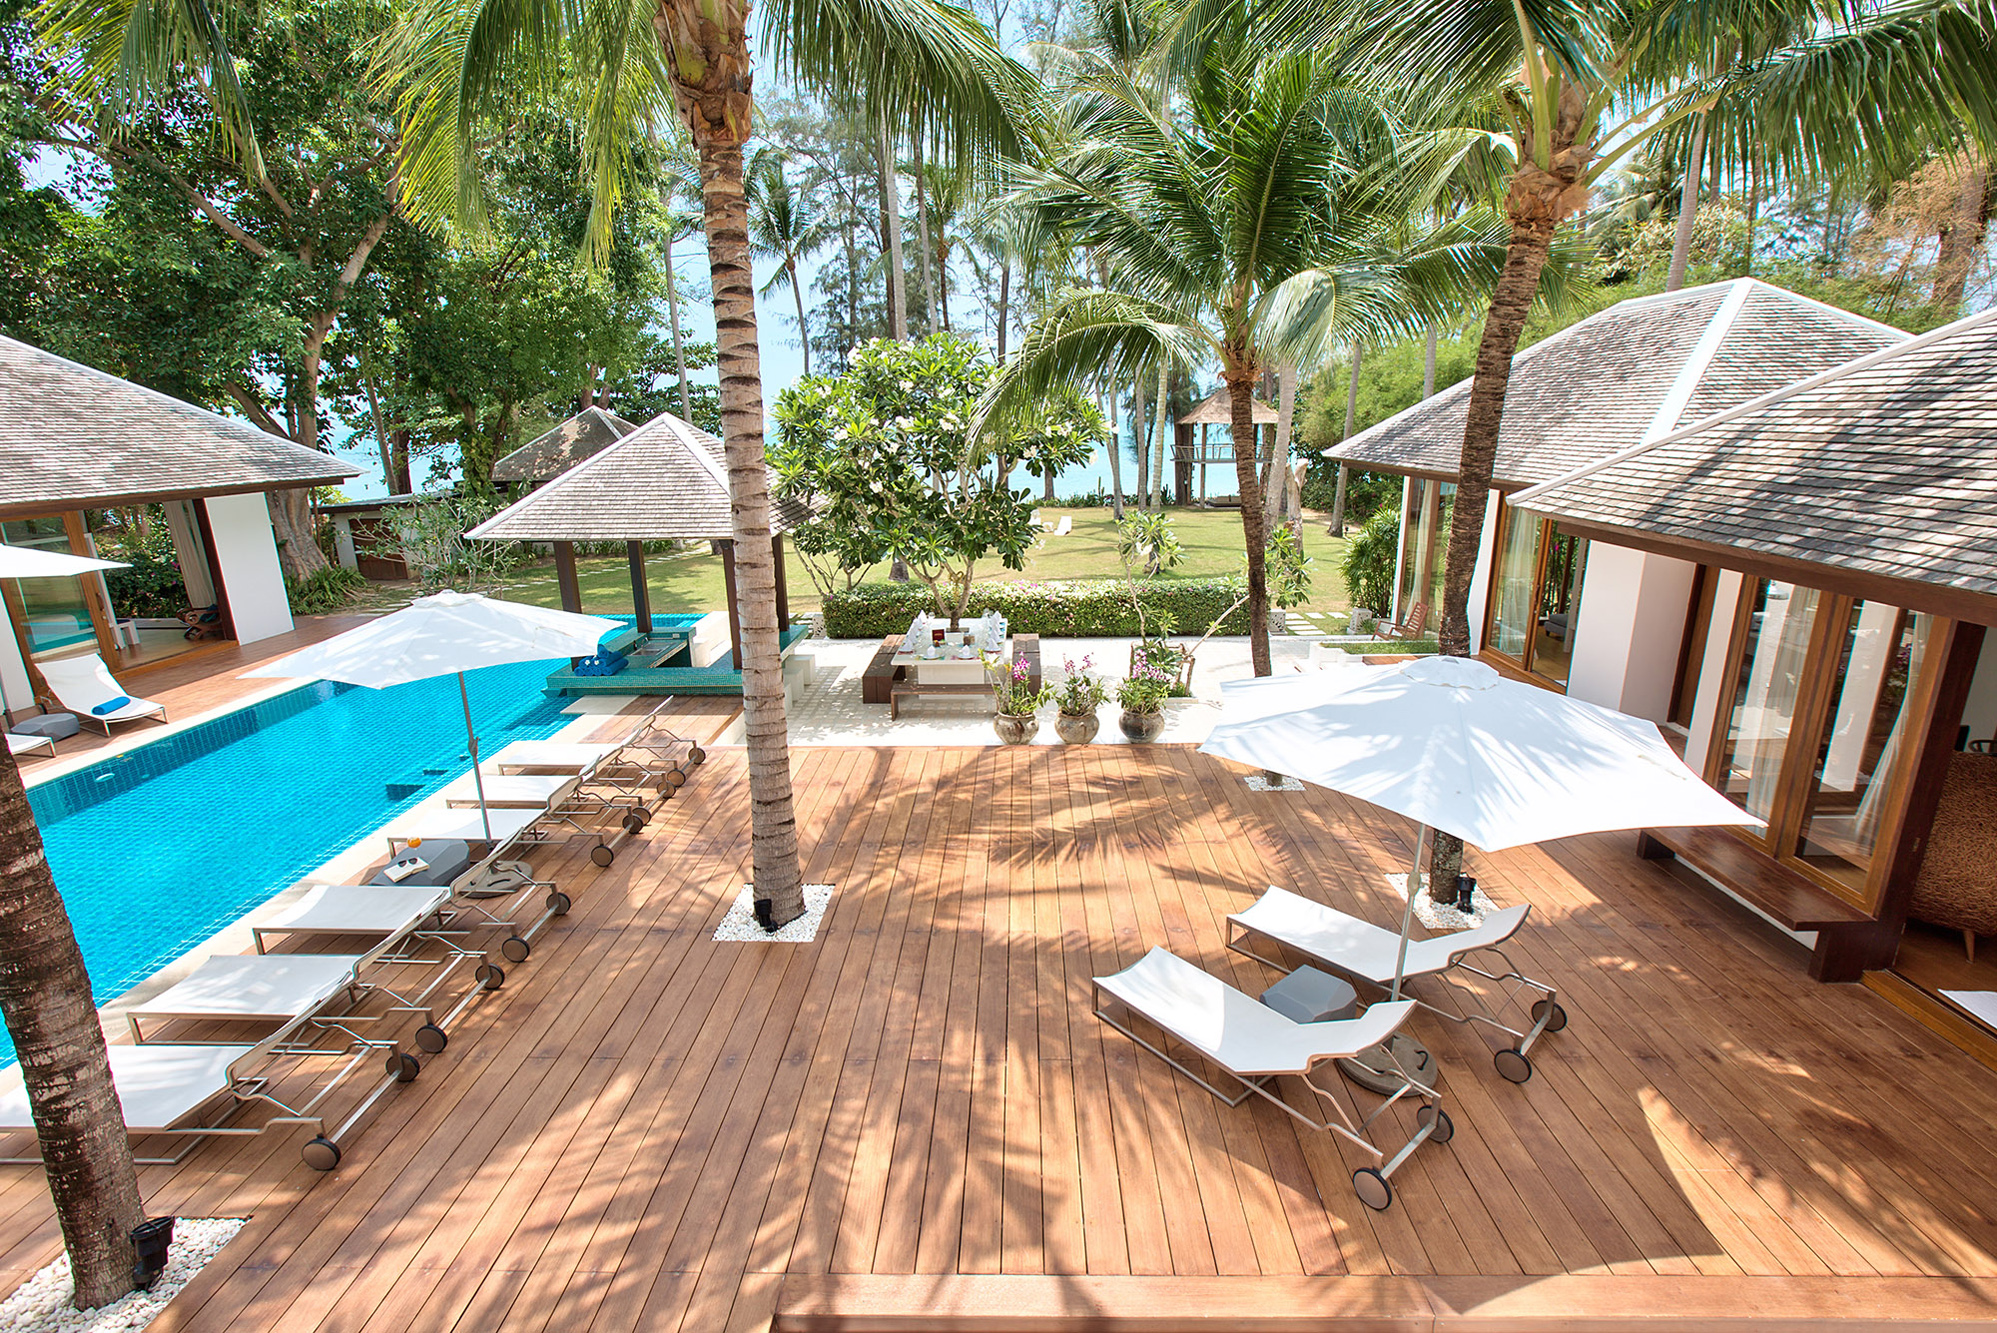 Ban Suriya - Lipa Noi Beachfront Villa in Koh Samui, Thailand.